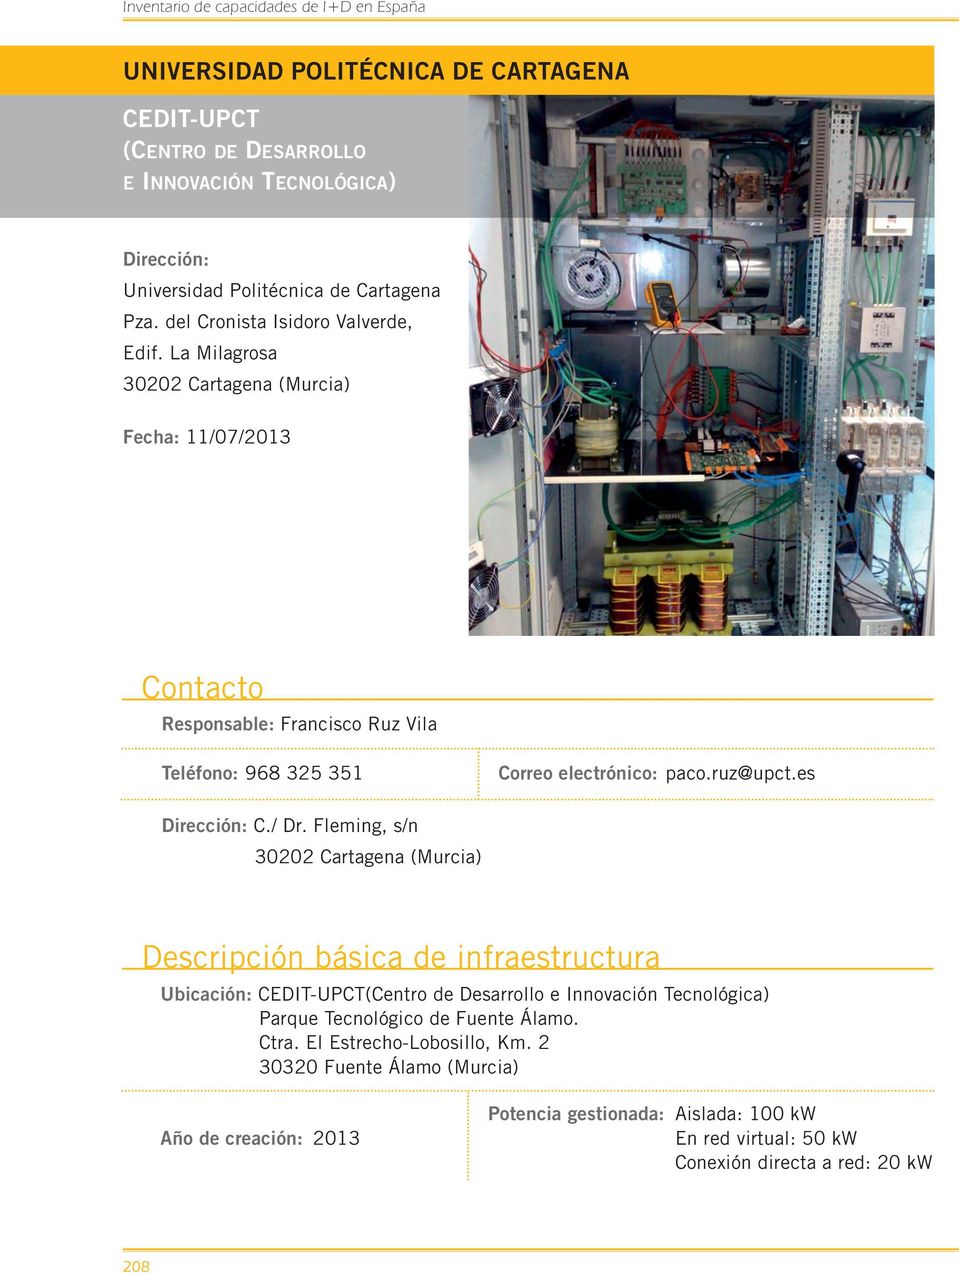 Fleming, s/n 30202 Cartagena (Murcia) Descripción básica de infraestructura Ubicación: CEDIT-UPCT(Centro de Desarrollo e Innovación Tecnológica) Parque Tecnológico de Fuente